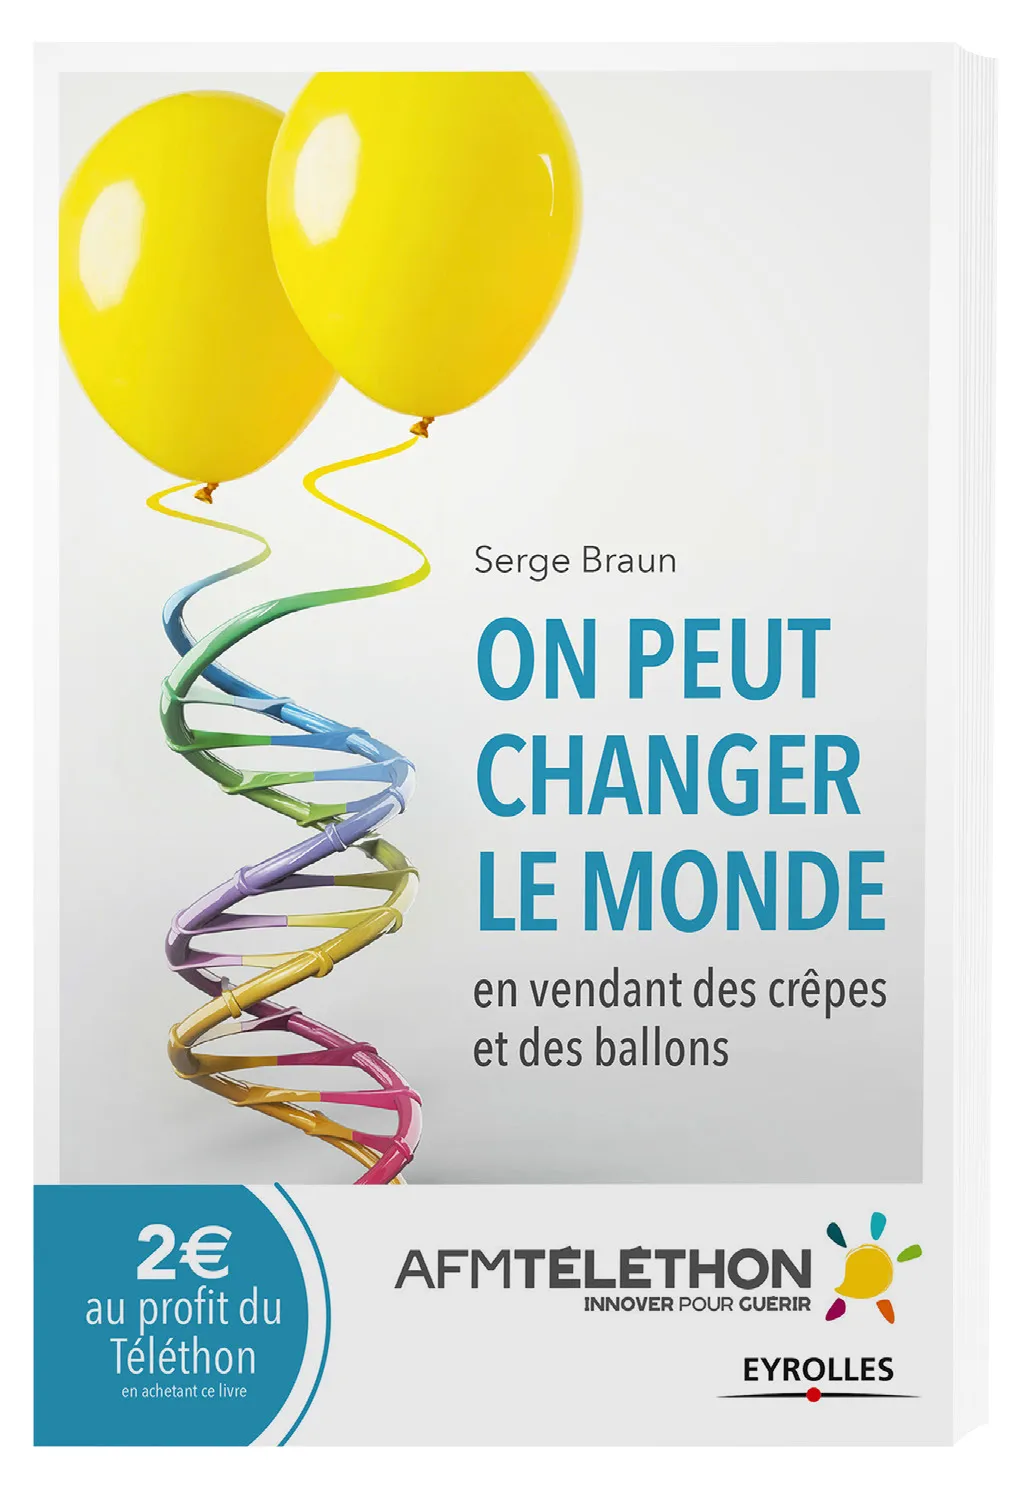 Livre de Serge Braun, directeur scientifique de l'AFM-Téléthon : on peut changer le monde en vendant des crêpes et des ballons